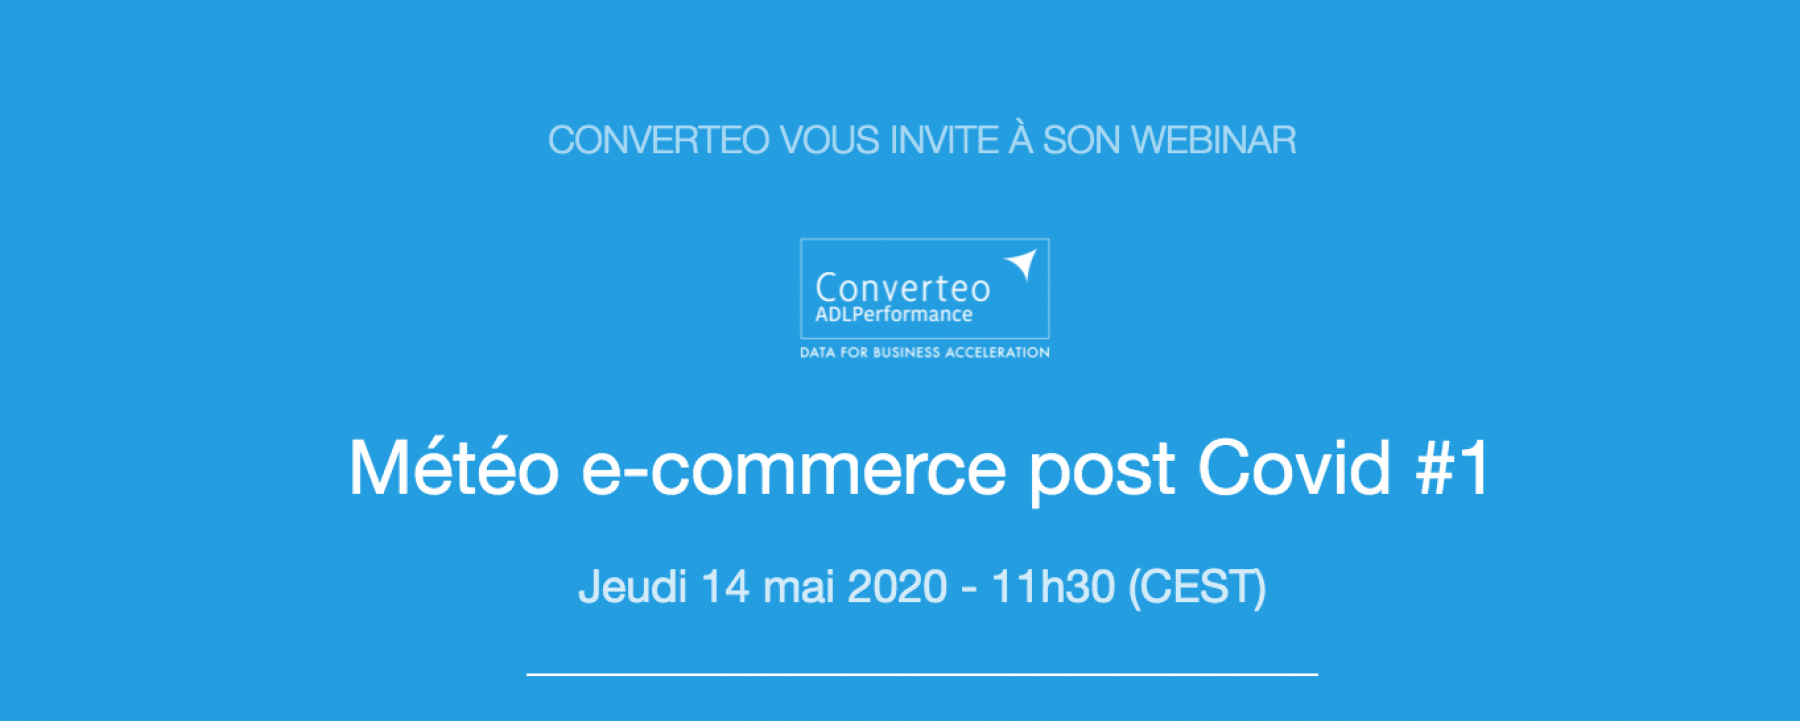 Webinar Météo E-commerce post Covid #1, le 14 mai 2020, organisé par Converteo 